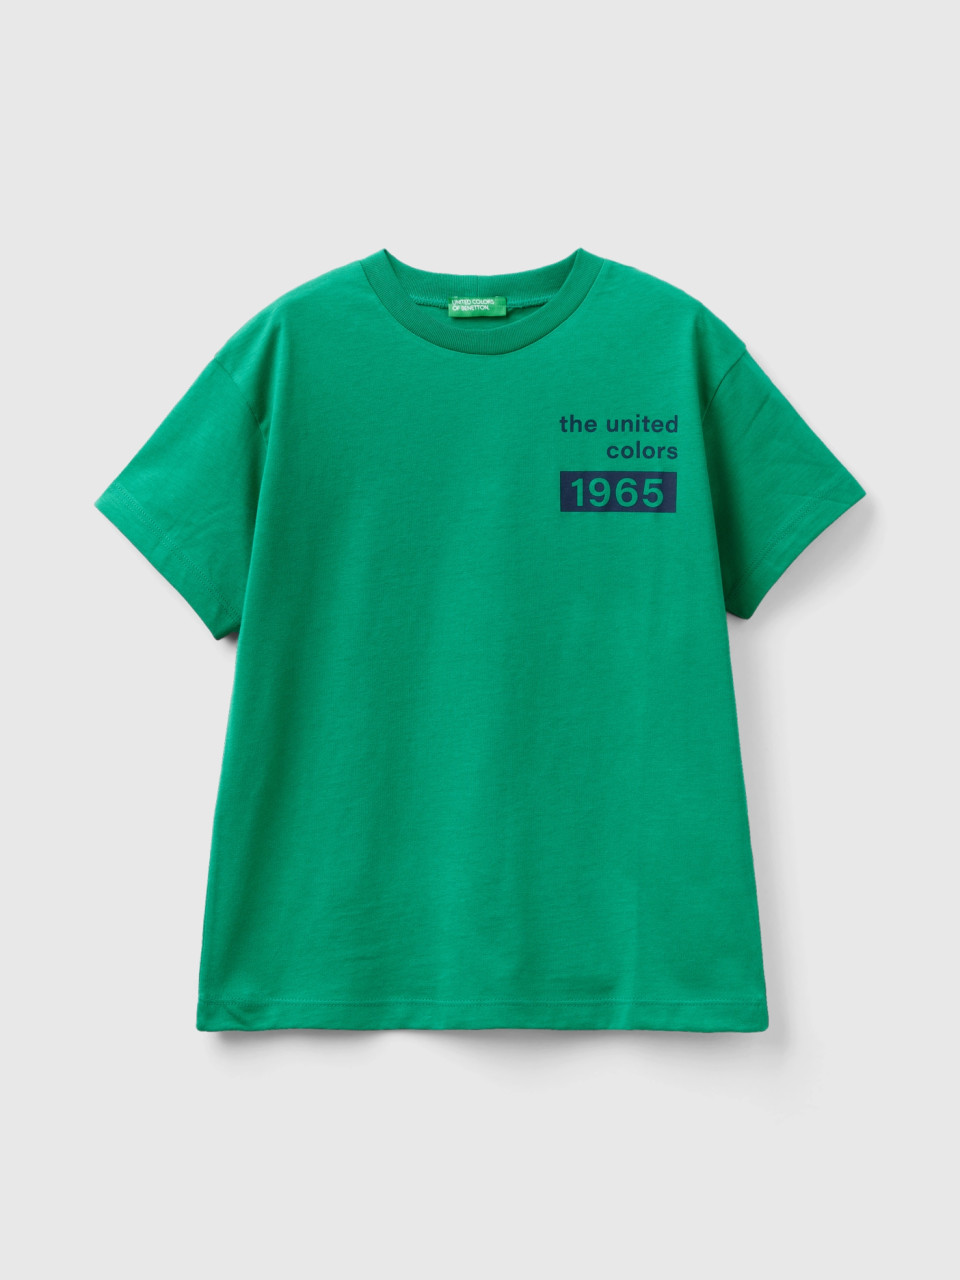 Benetton, T-shirt 100% Cotone Con Logo, Verde, Bambini